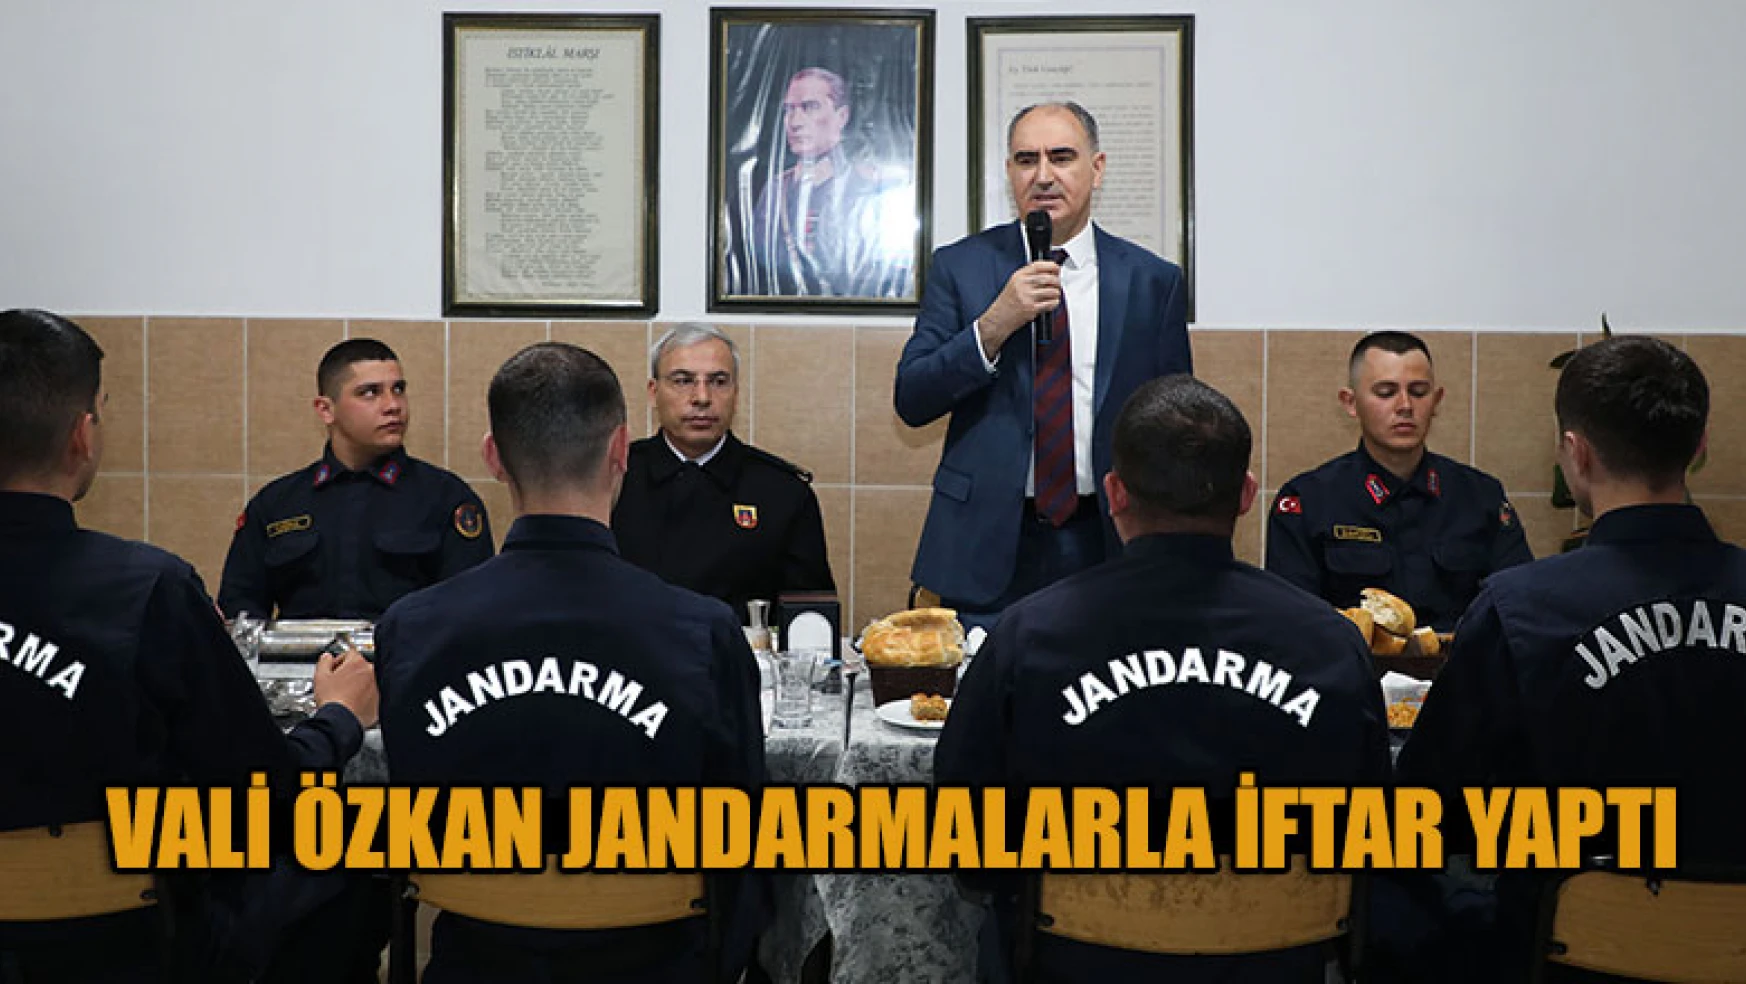 Vali Özkan Jandarmalarla iftar yaptı